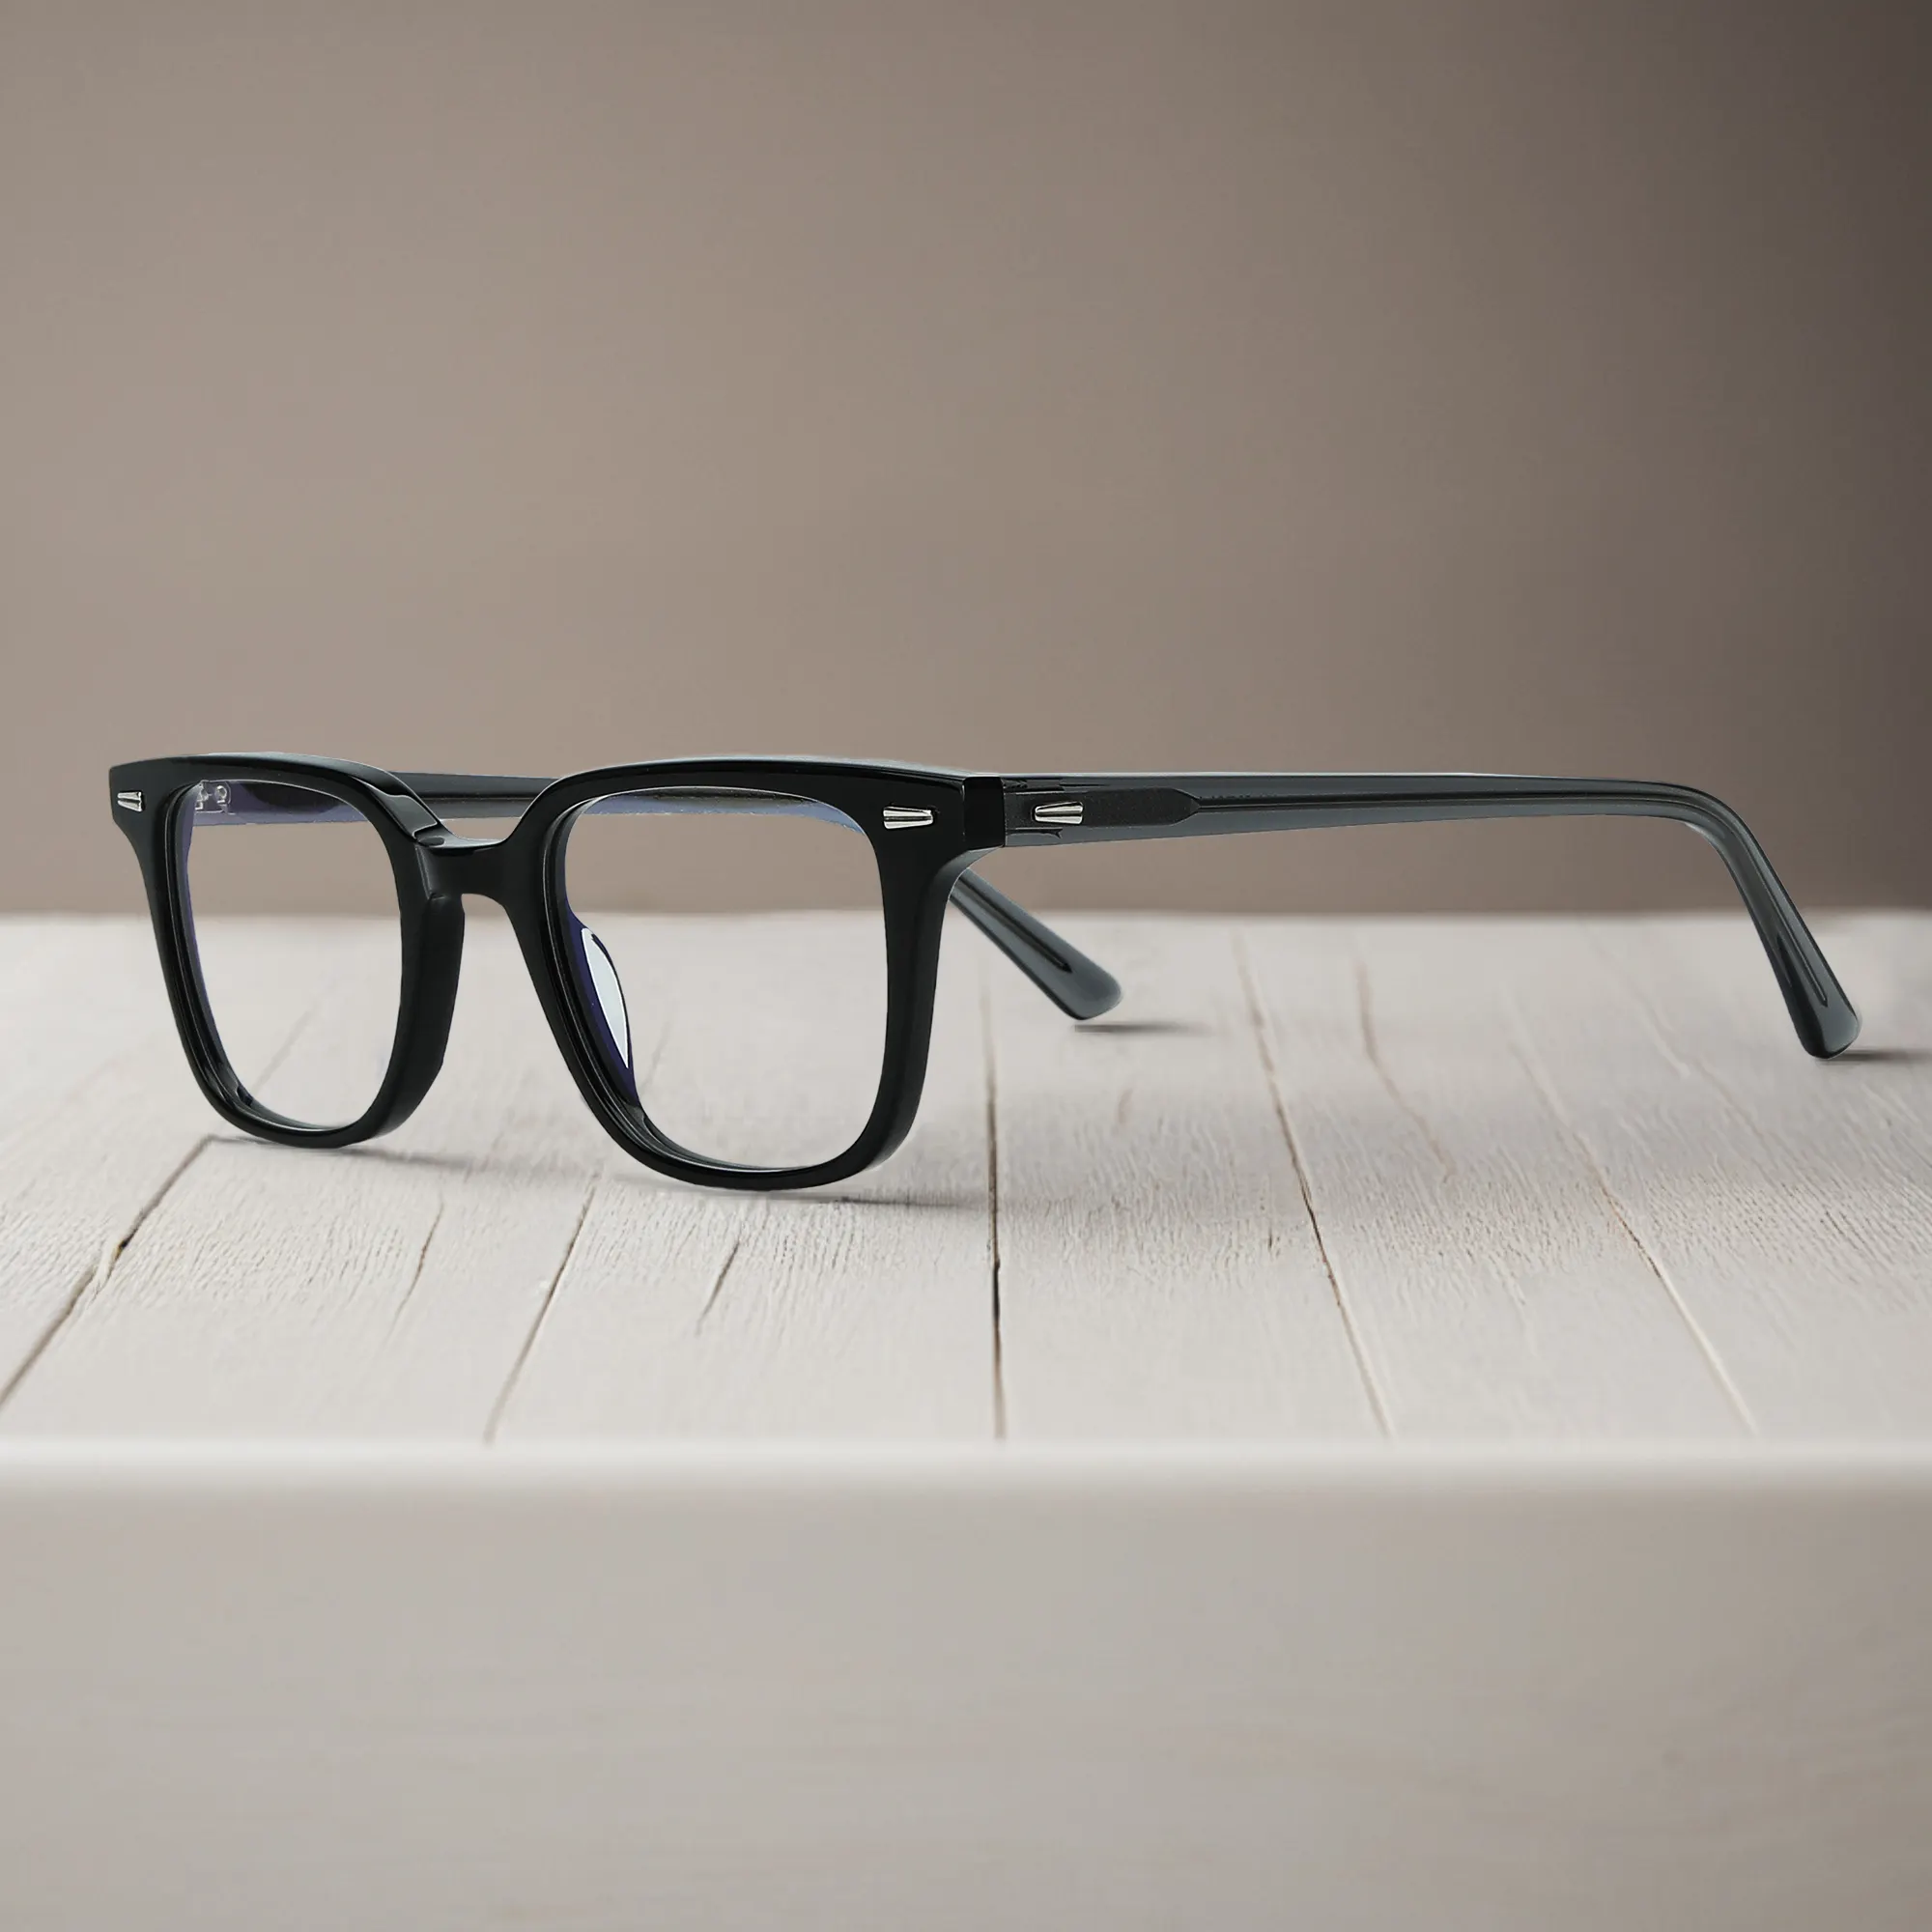 Mode hommes mince carré acétate lunettes optiques cadre lunettes de créateur lentille polarisée Anti lumière bleue lunettes